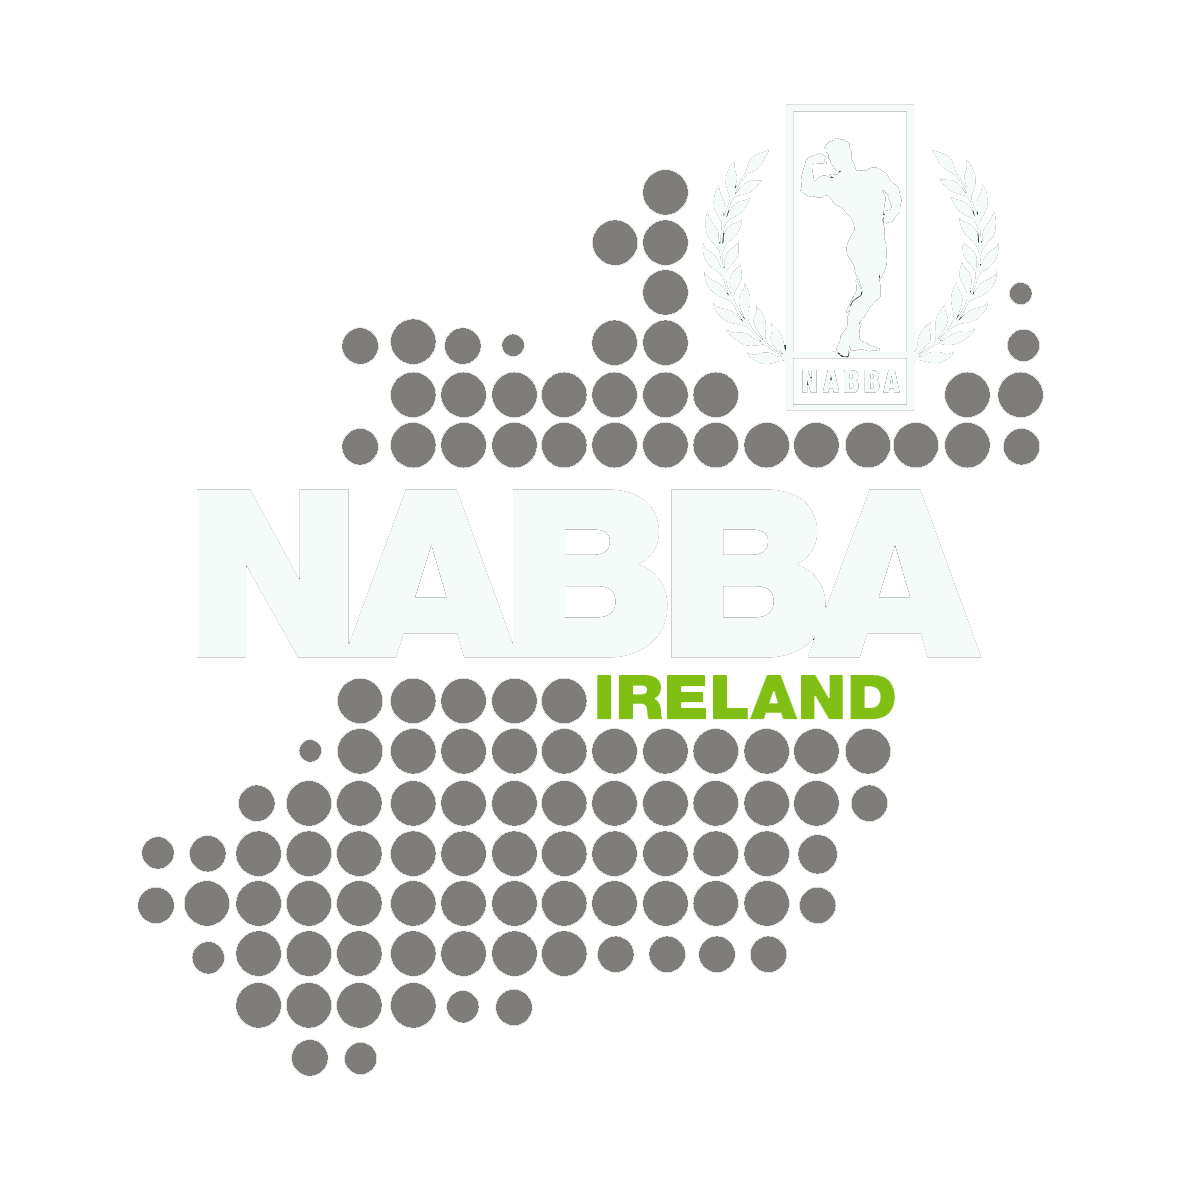 NABBA Ireland